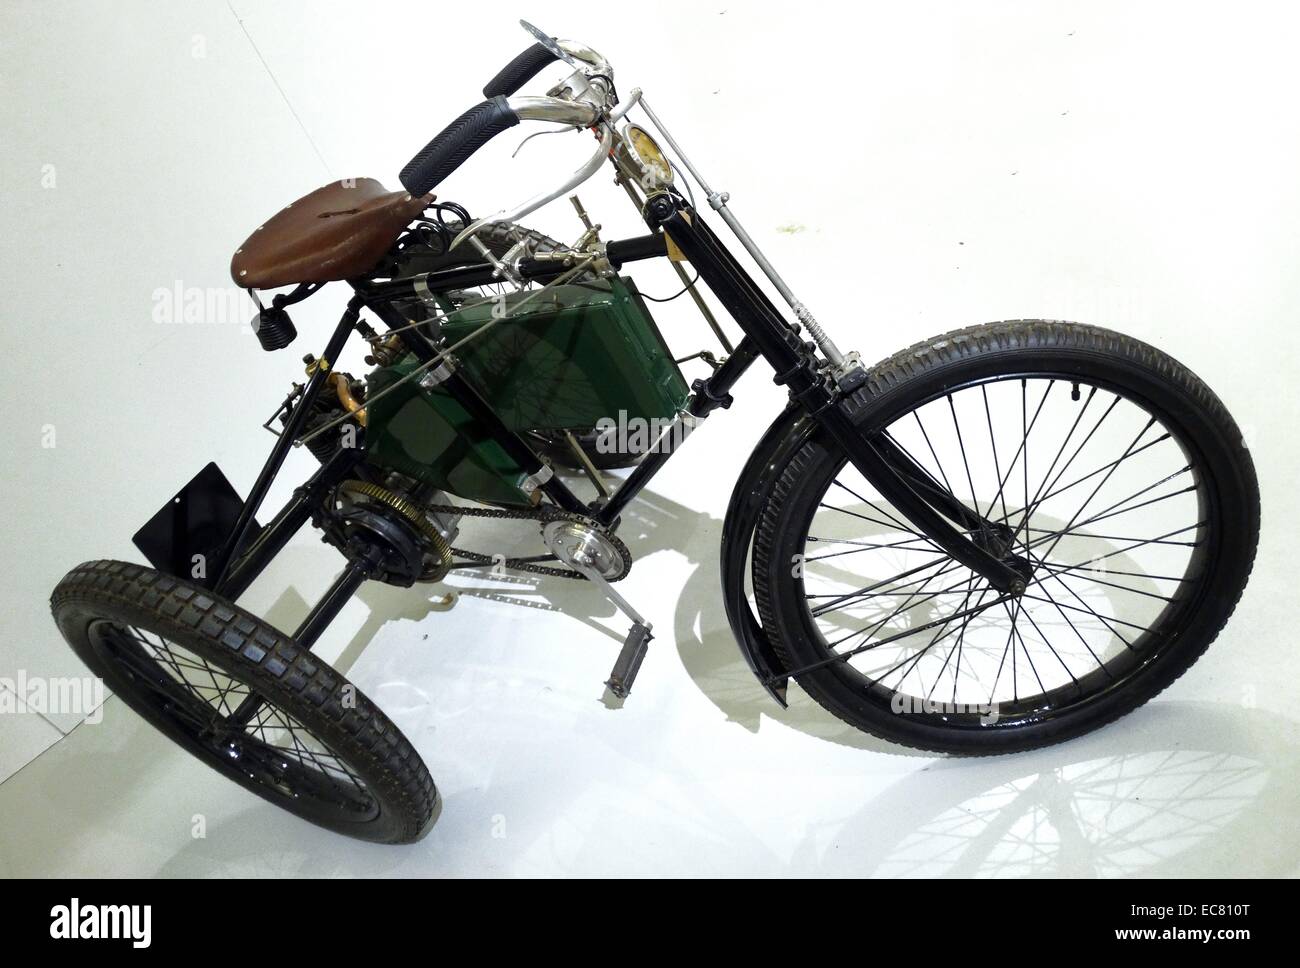 1899 Royal 3.5Hp tricycle motorisé Riley. William Riley a fondé la société en 1896 Cycle de Riley. Bien que son fils a conçu un véhicule à moteur à quatre roues en 1898, son entreprise a choisi de se concentrer sur des cyclomoteurs à la place. Banque D'Images